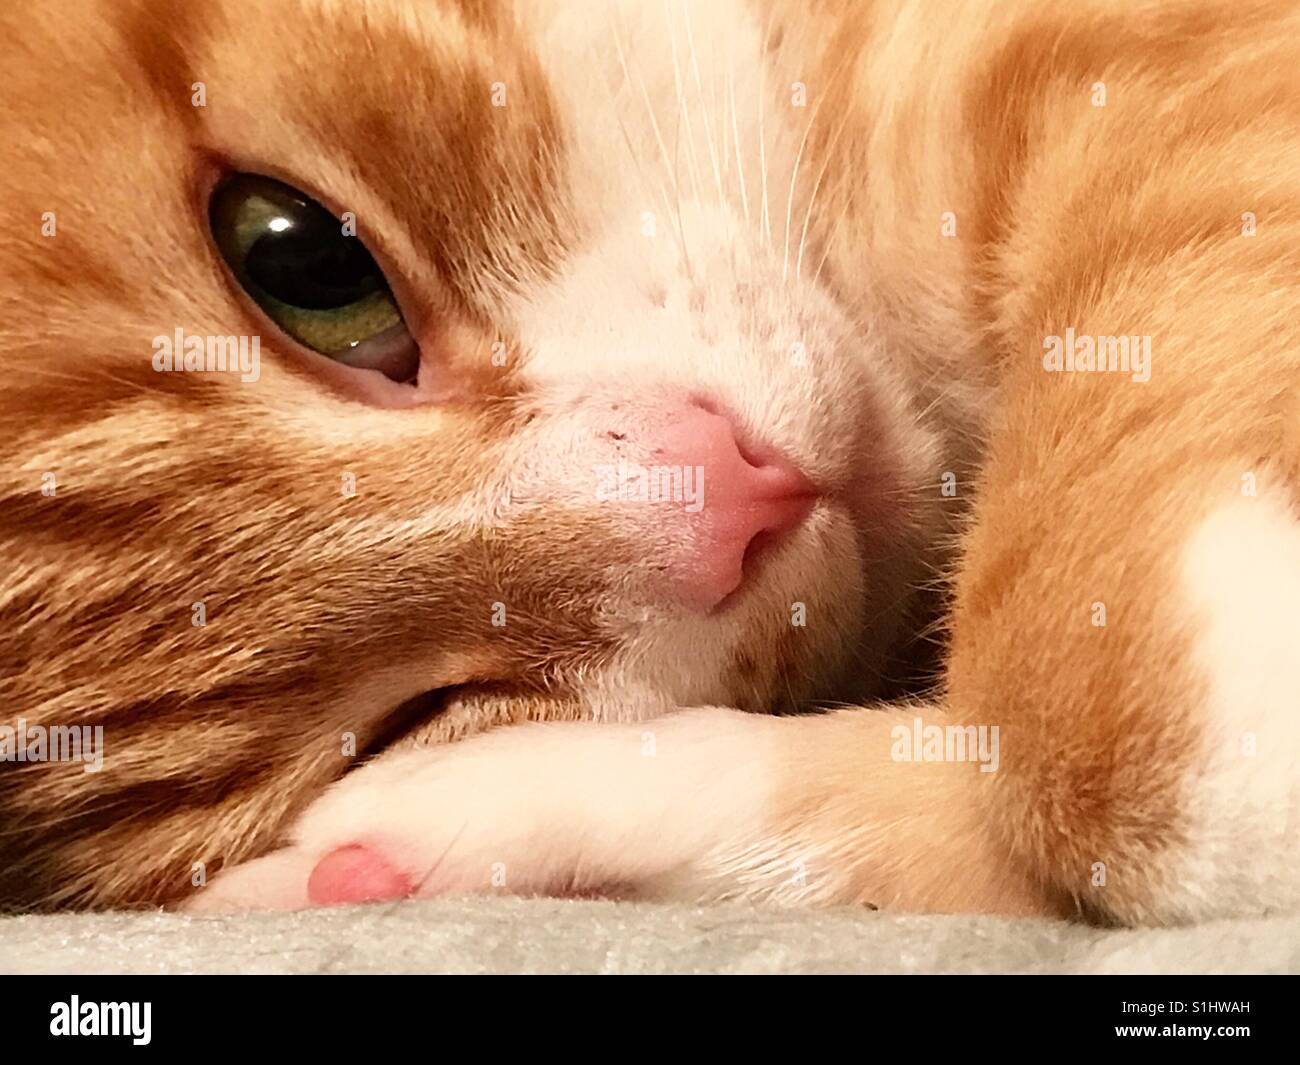 Close-up portrait of beautiful ou domestique American Shorthair tabby tomcat qui a récemment été stérilisés. Son nom est Punkin et il a de magnifiques yeux verts Banque D'Images